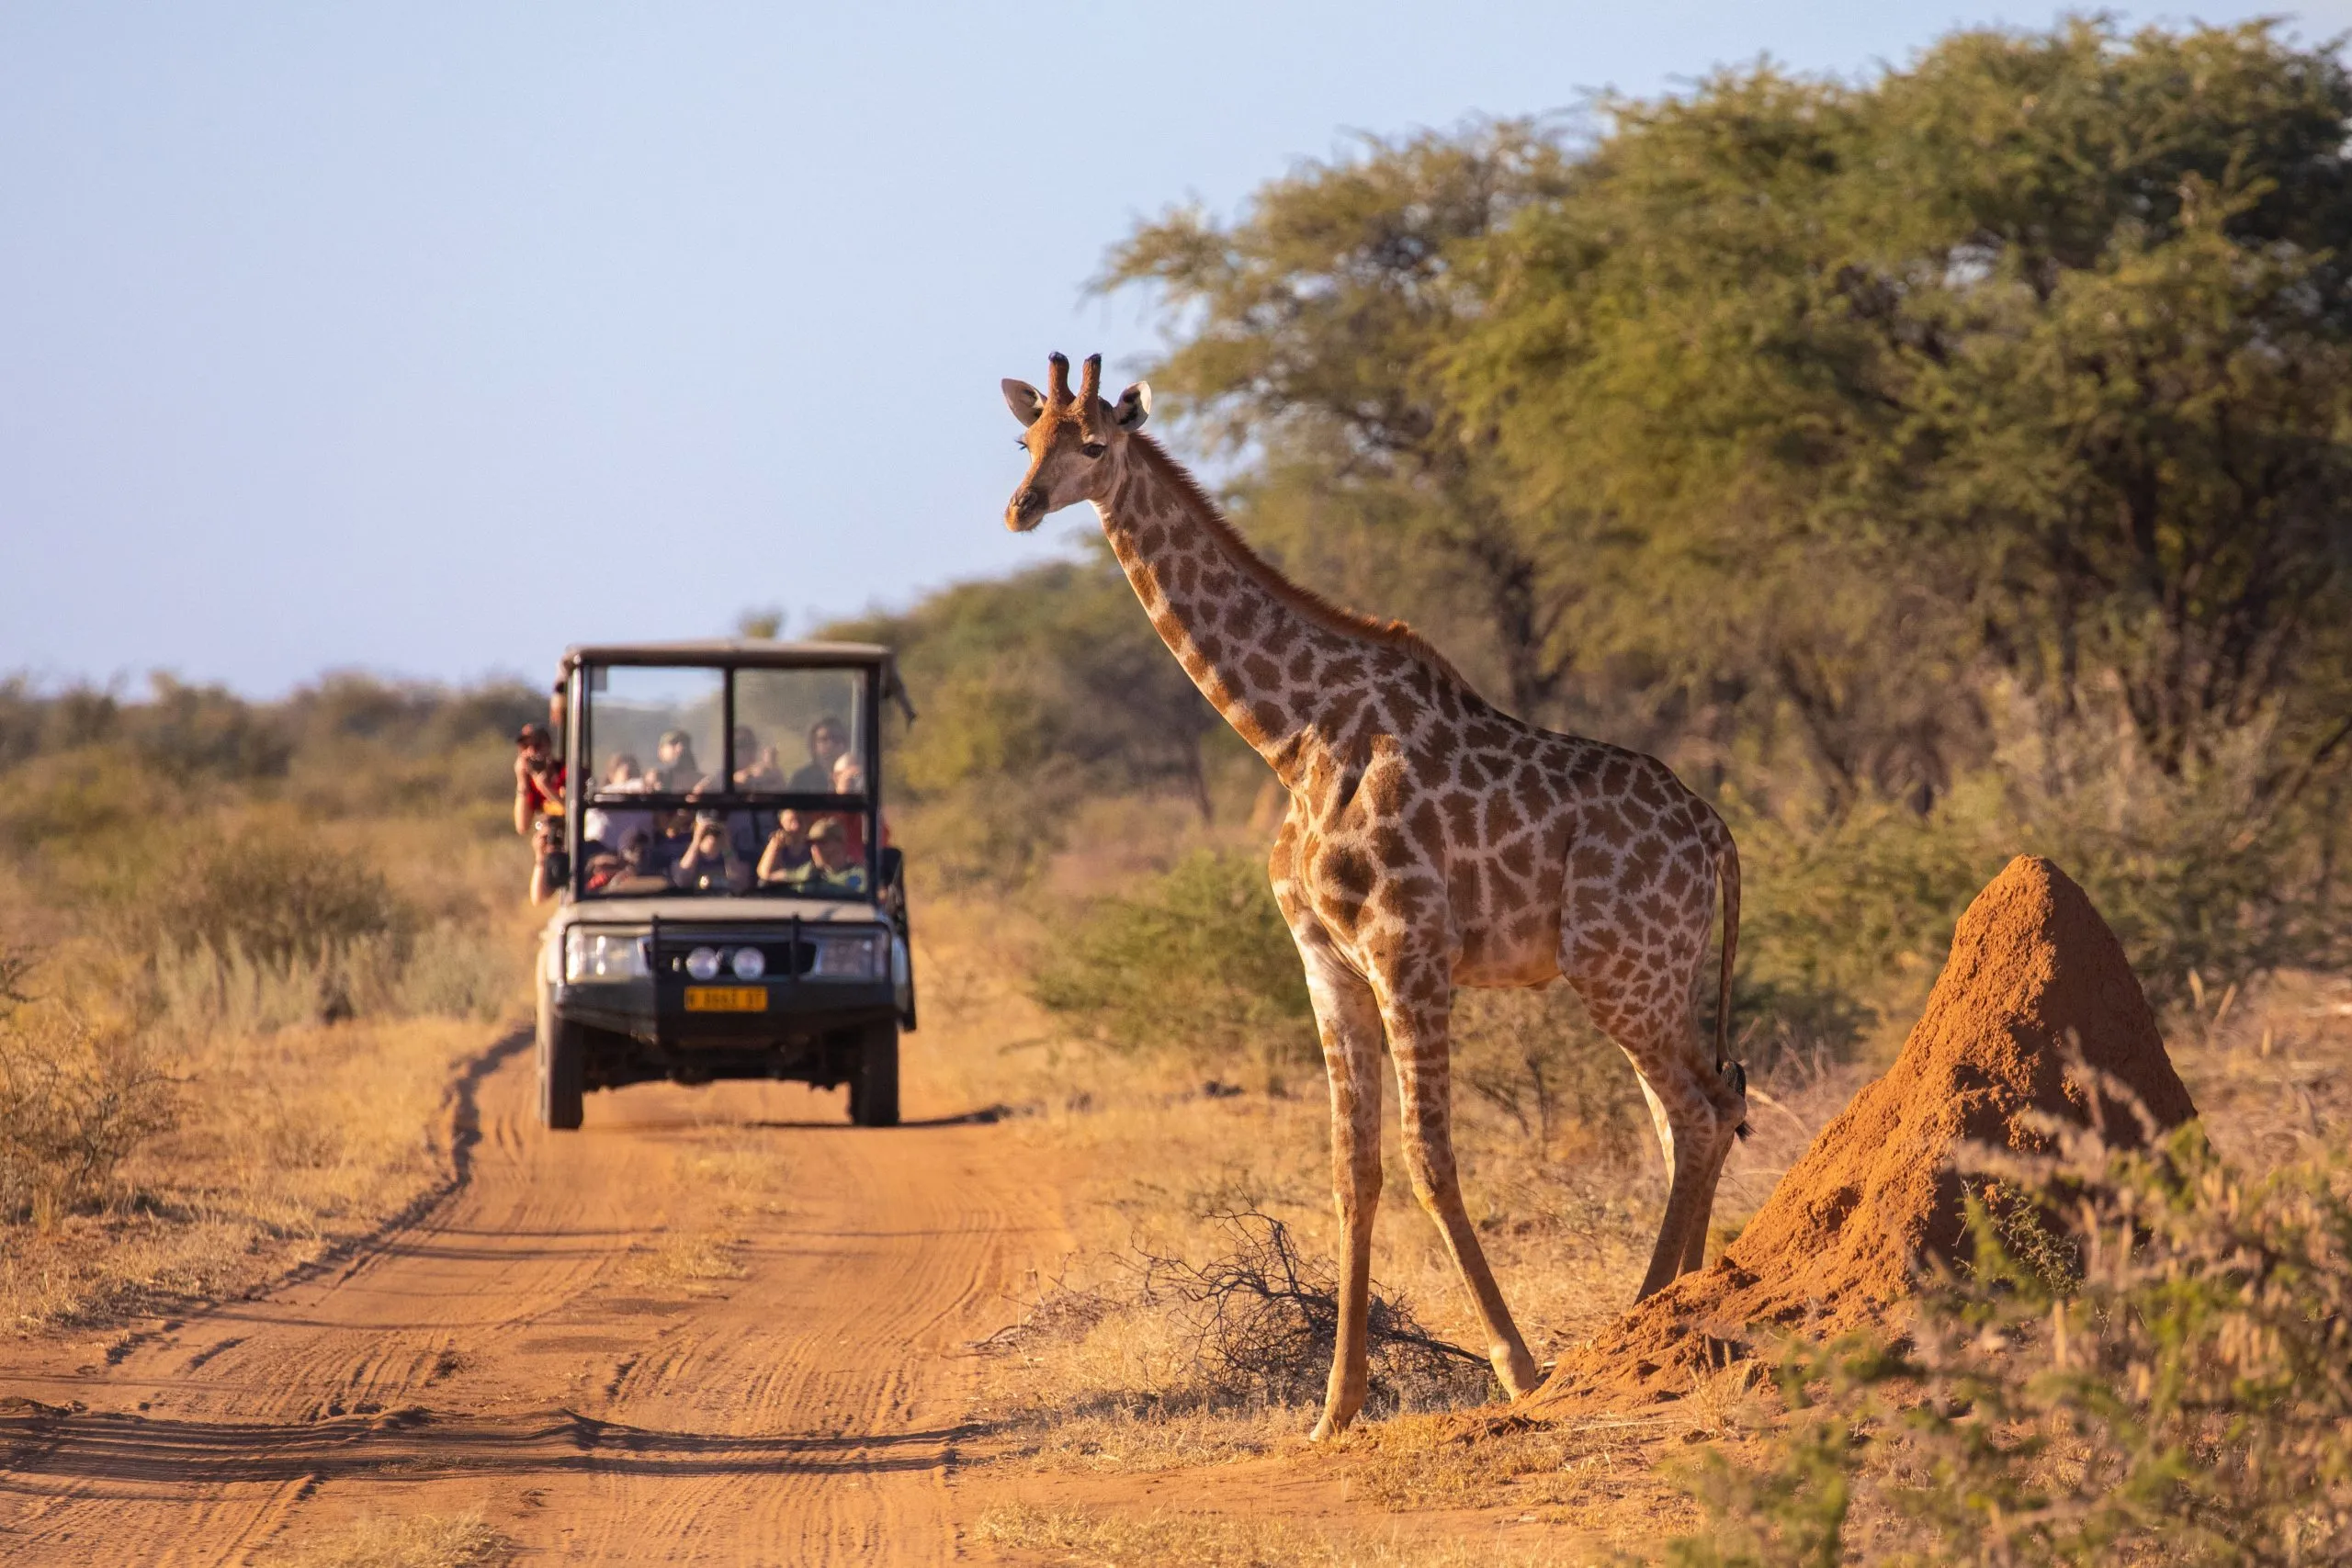 Une girafe sauvage traverse une route africaine devant un véhicule de safari rempli de touristes.